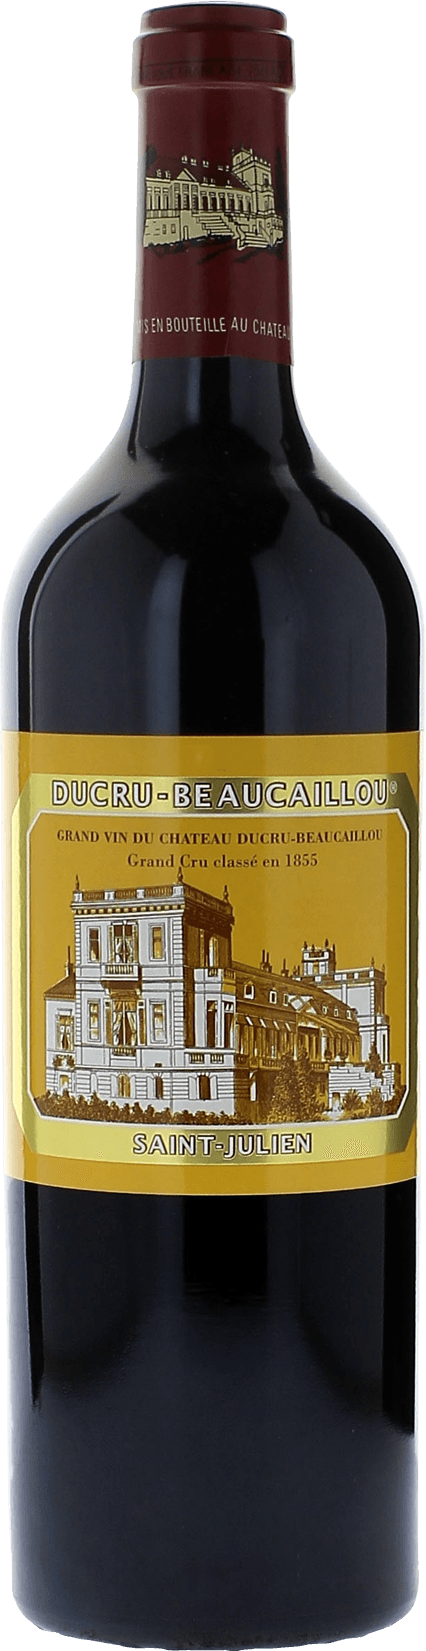 Ducru beaucaillou 1993 2me Grand cru class Saint-Julien, Bordeaux rouge